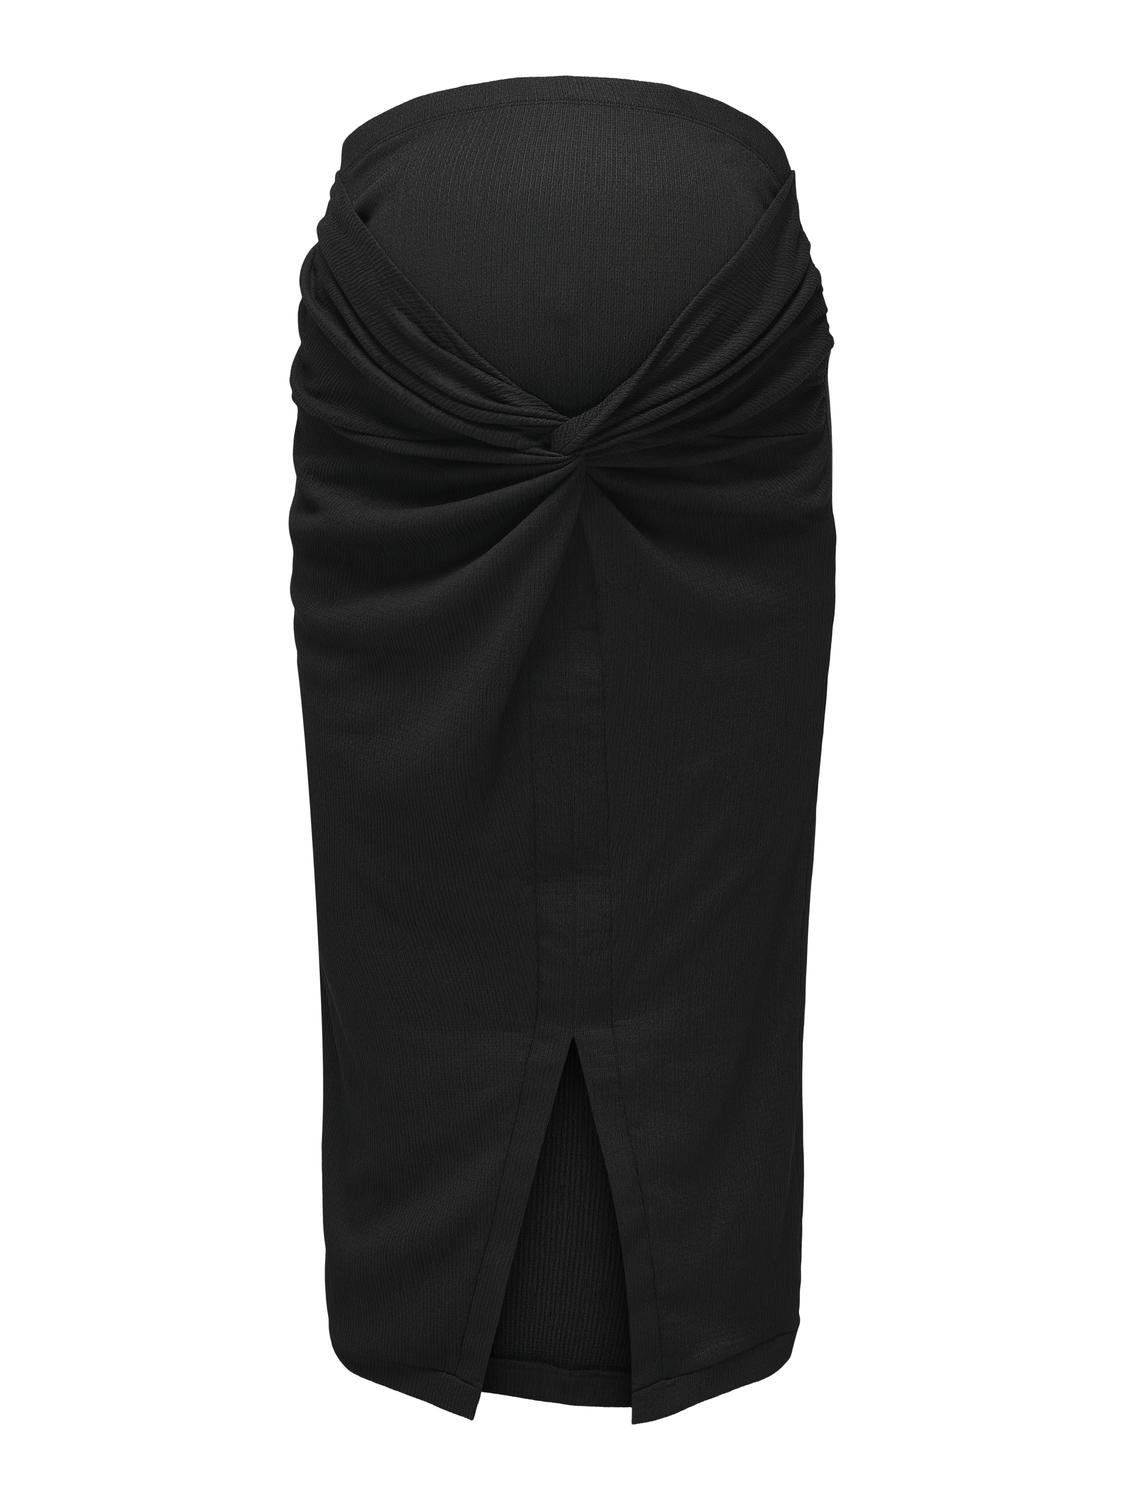 ONLY Long skirt -Black - 15312635